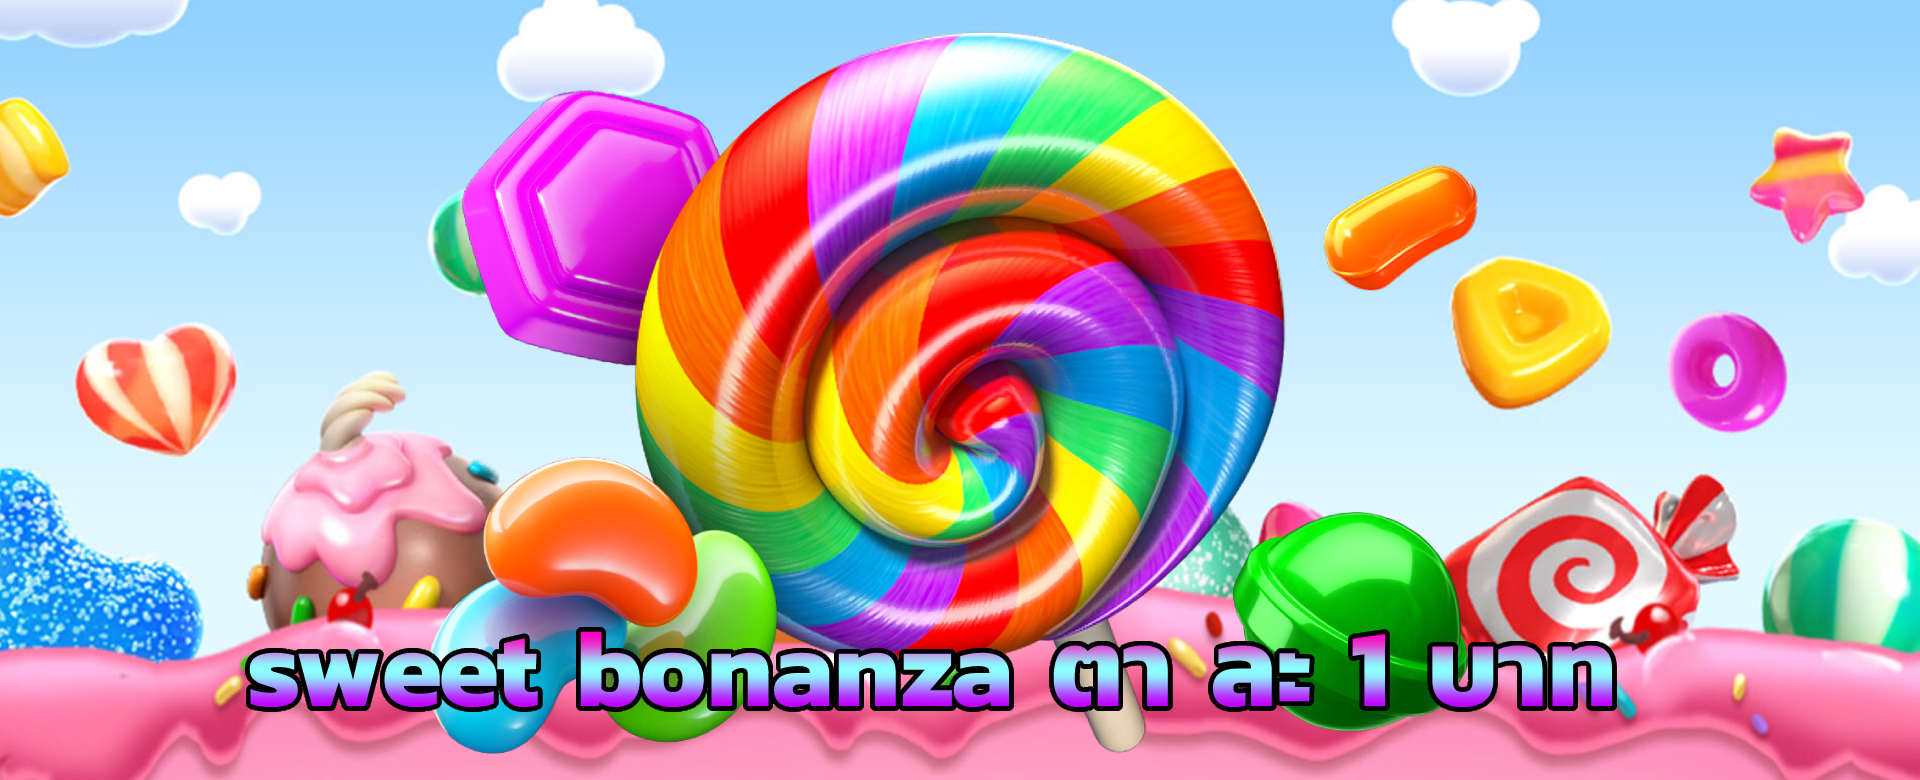 sweet bonanza ตา ละ 1 บาท